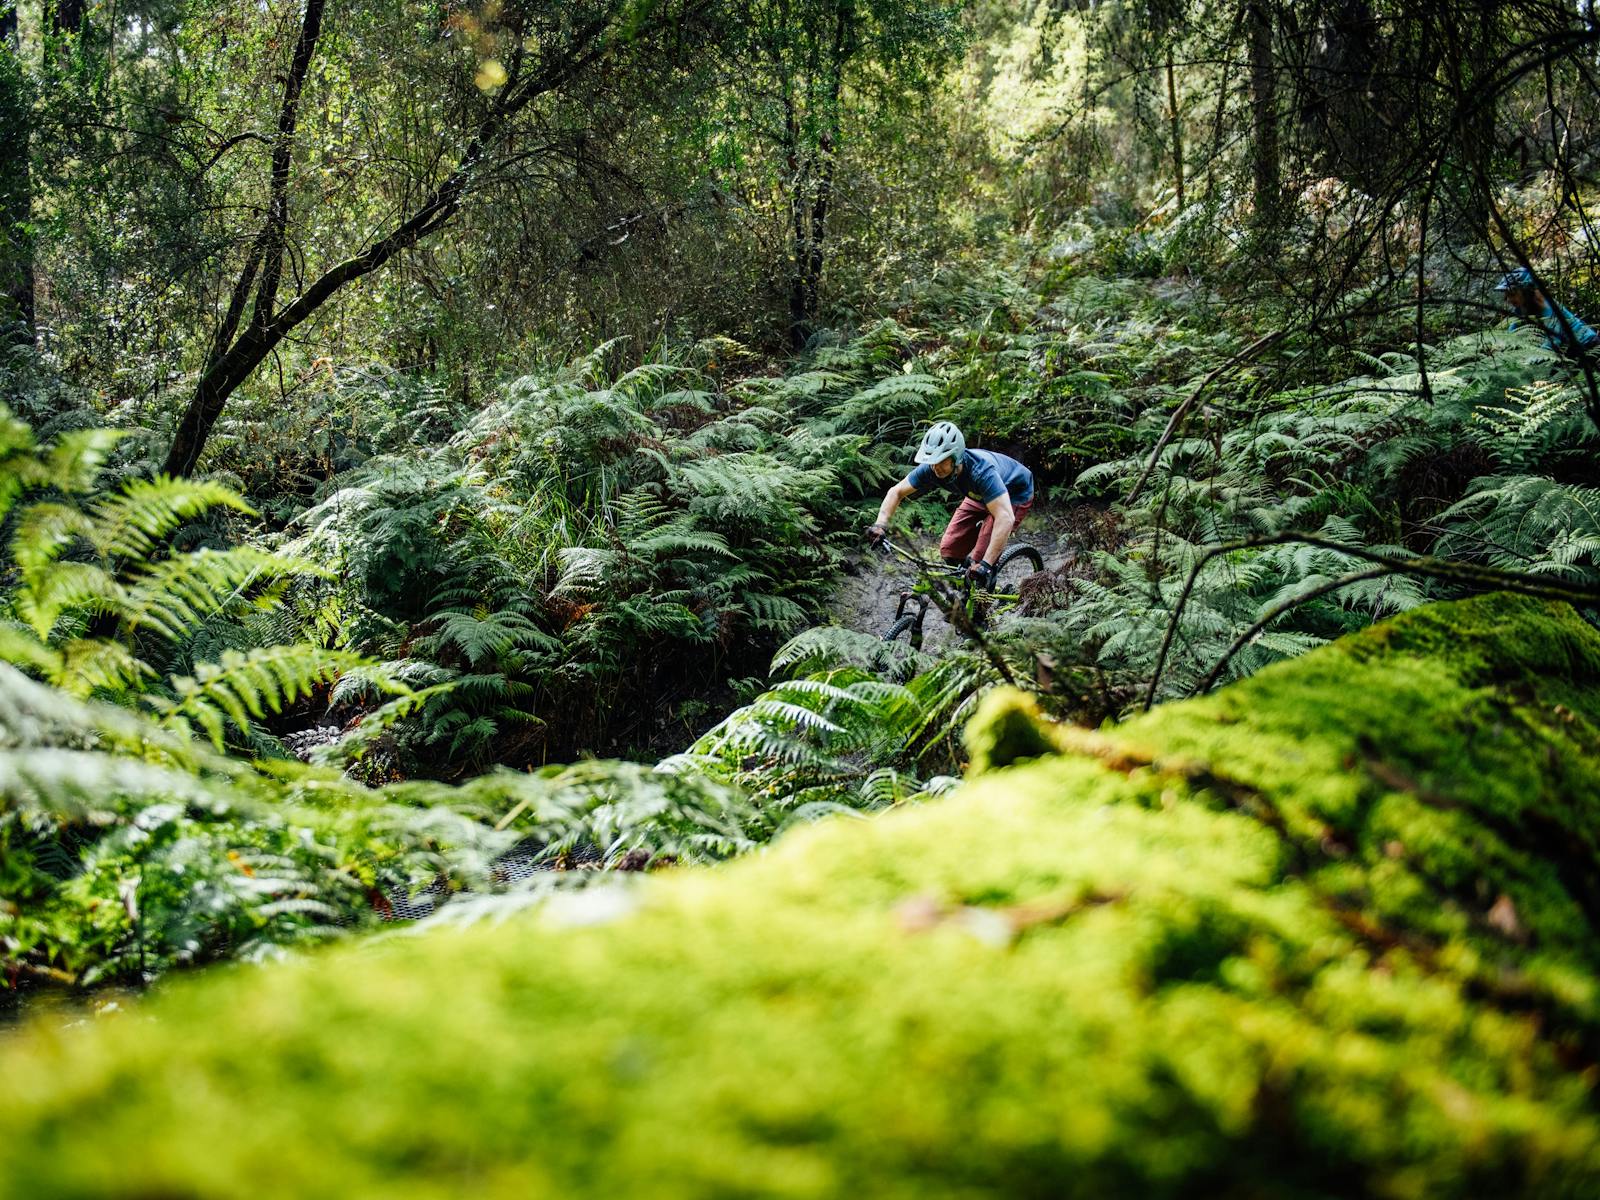 Rider bikes through a valley of ferns